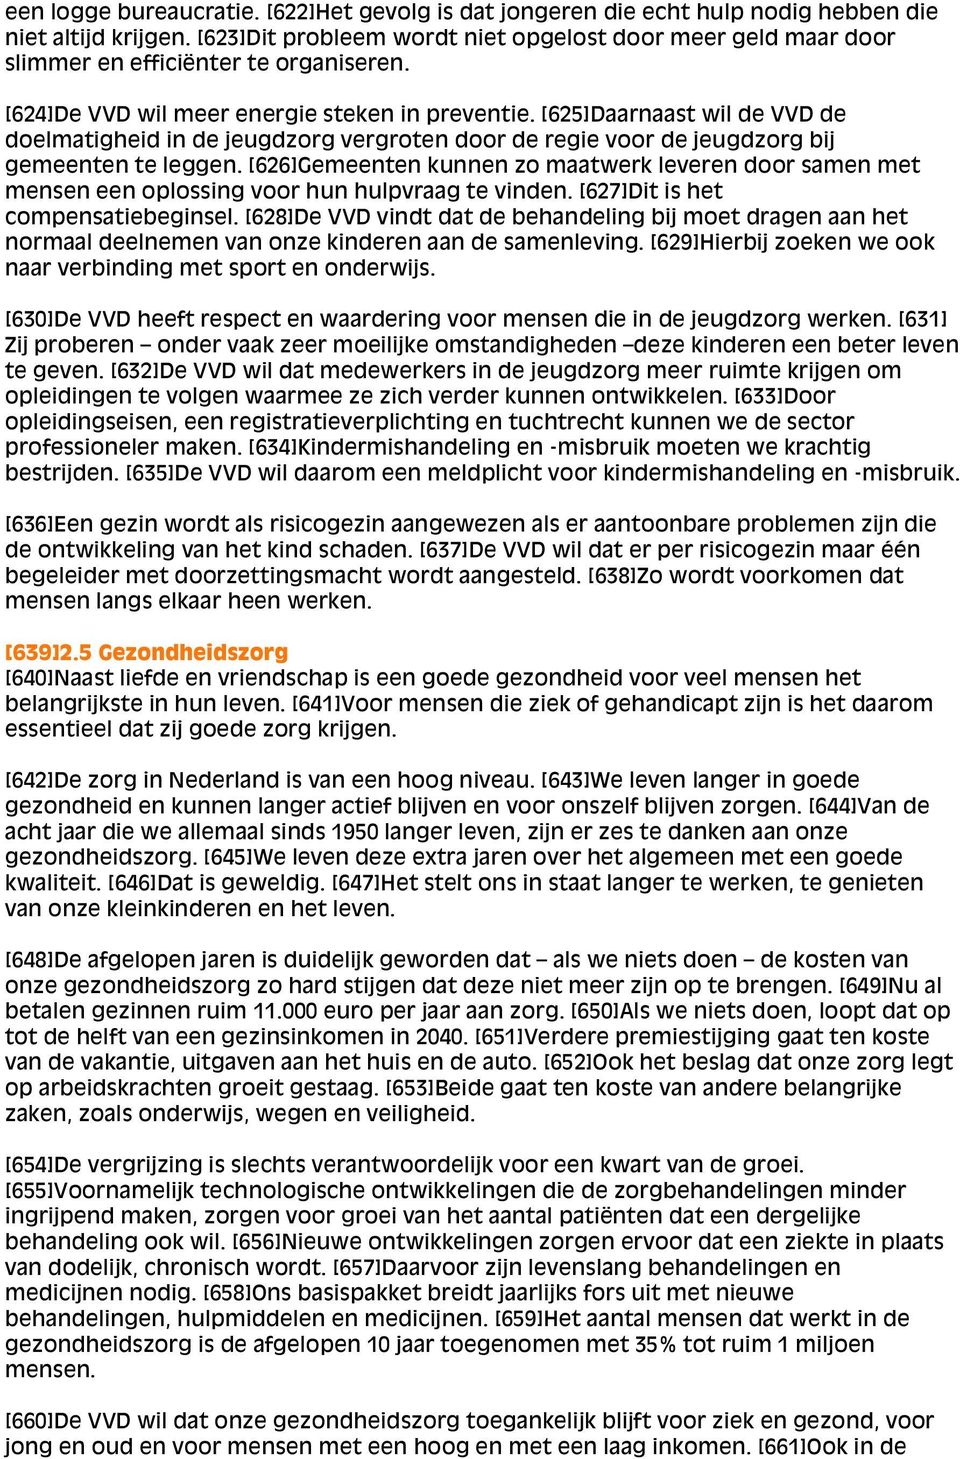 [625]Daarnaast wil de VVD de doelmatigheid in de jeugdzorg vergroten door de regie voor de jeugdzorg bij gemeenten te leggen.